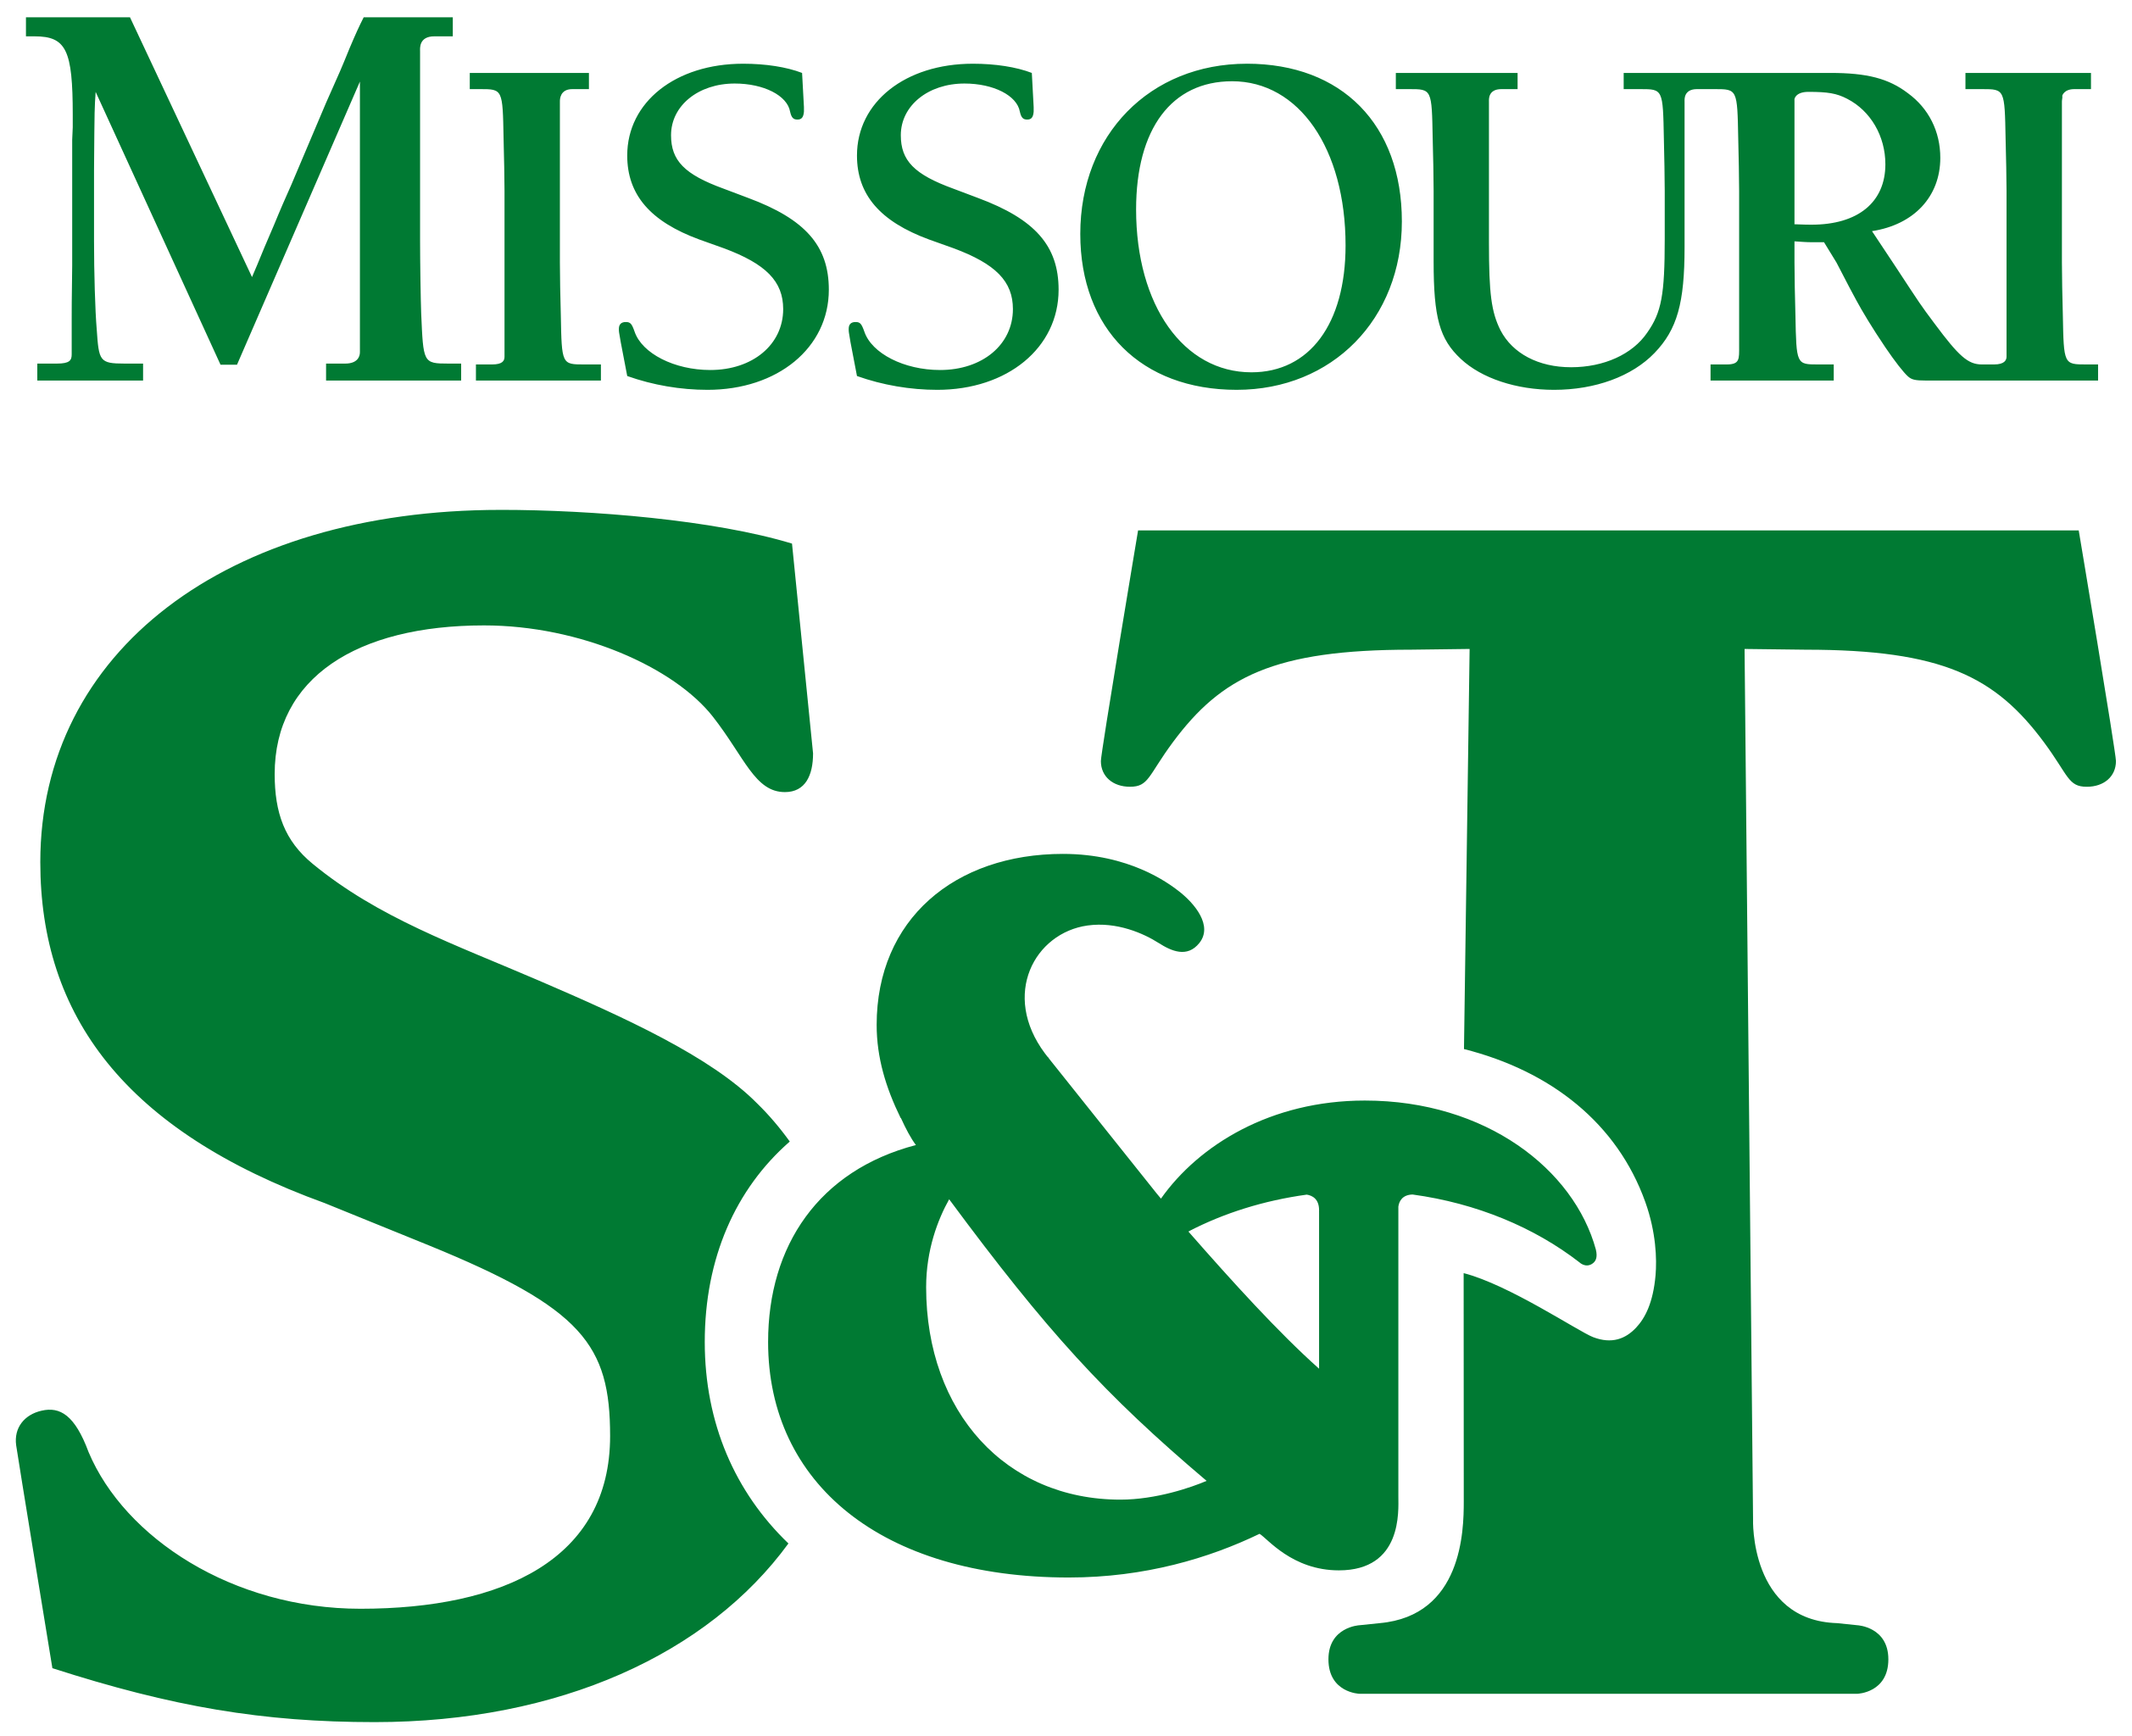 Missouri UST